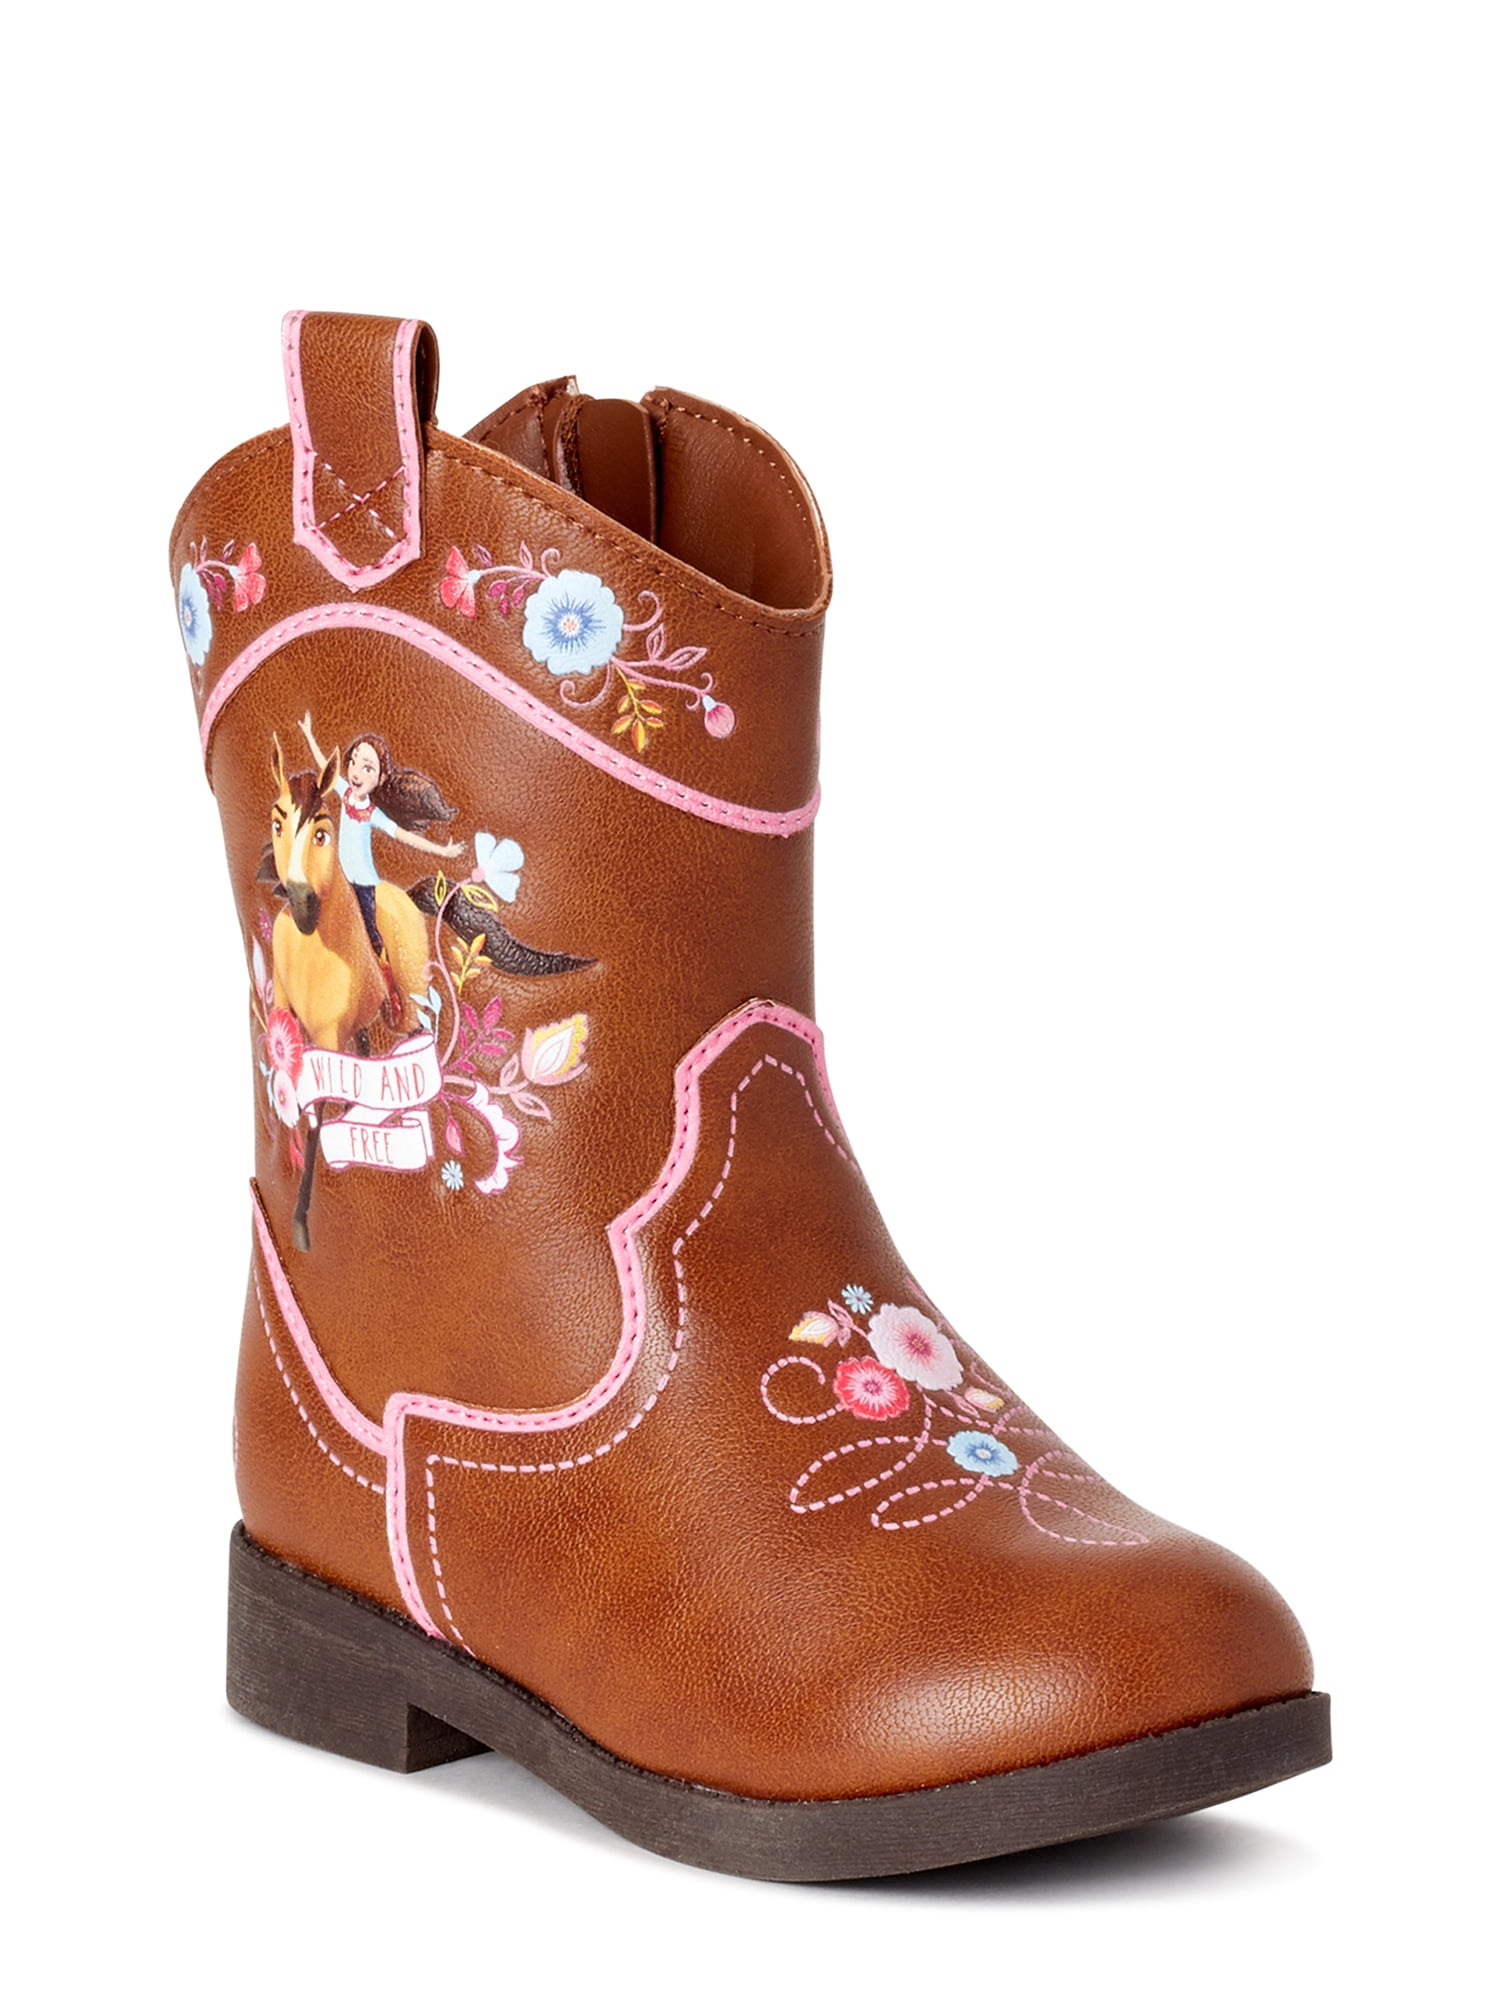 walmart children's boots